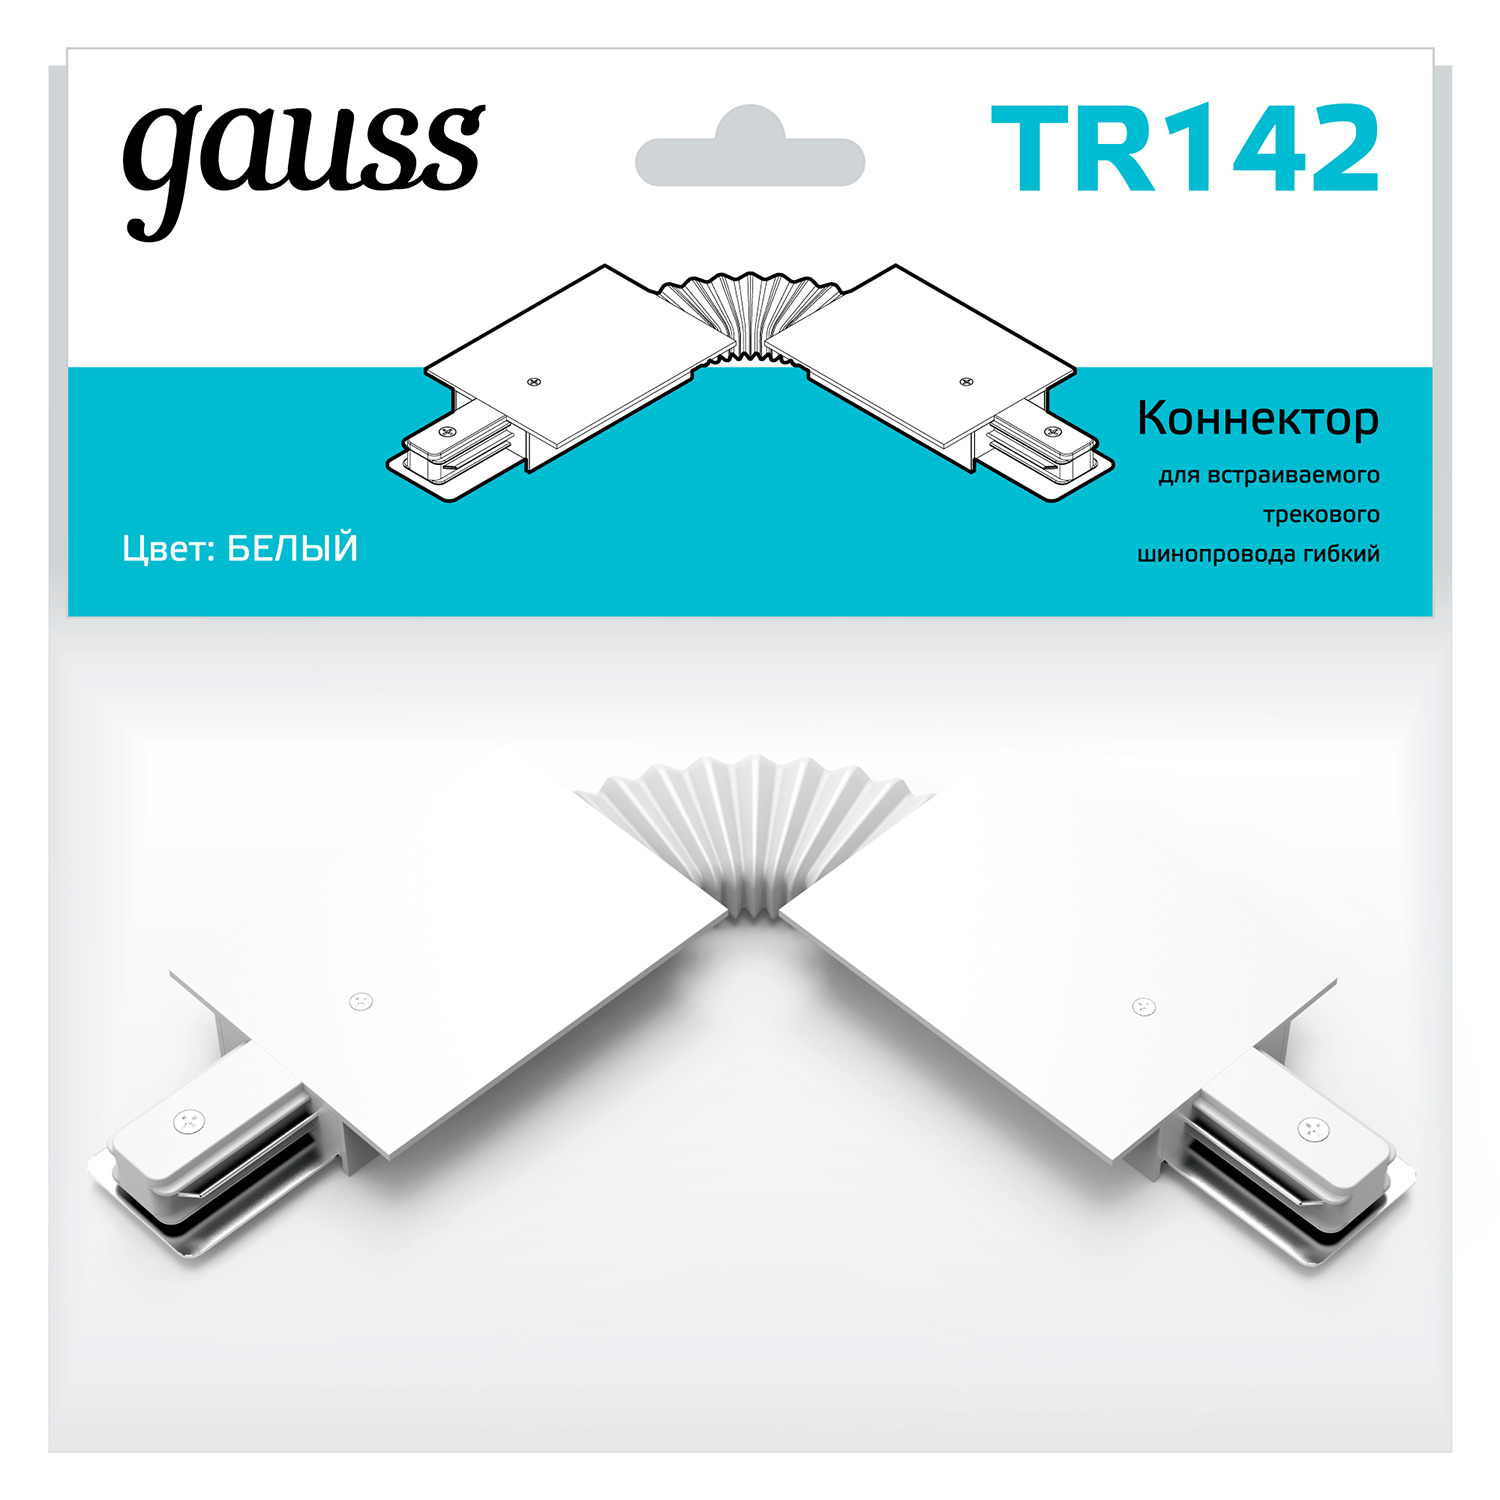 Коннектор Gauss для встраиваемых трековых шинопроводов гибкий (I) белый коннектор gauss для встраиваемых трековых шинопроводов прямой i белый